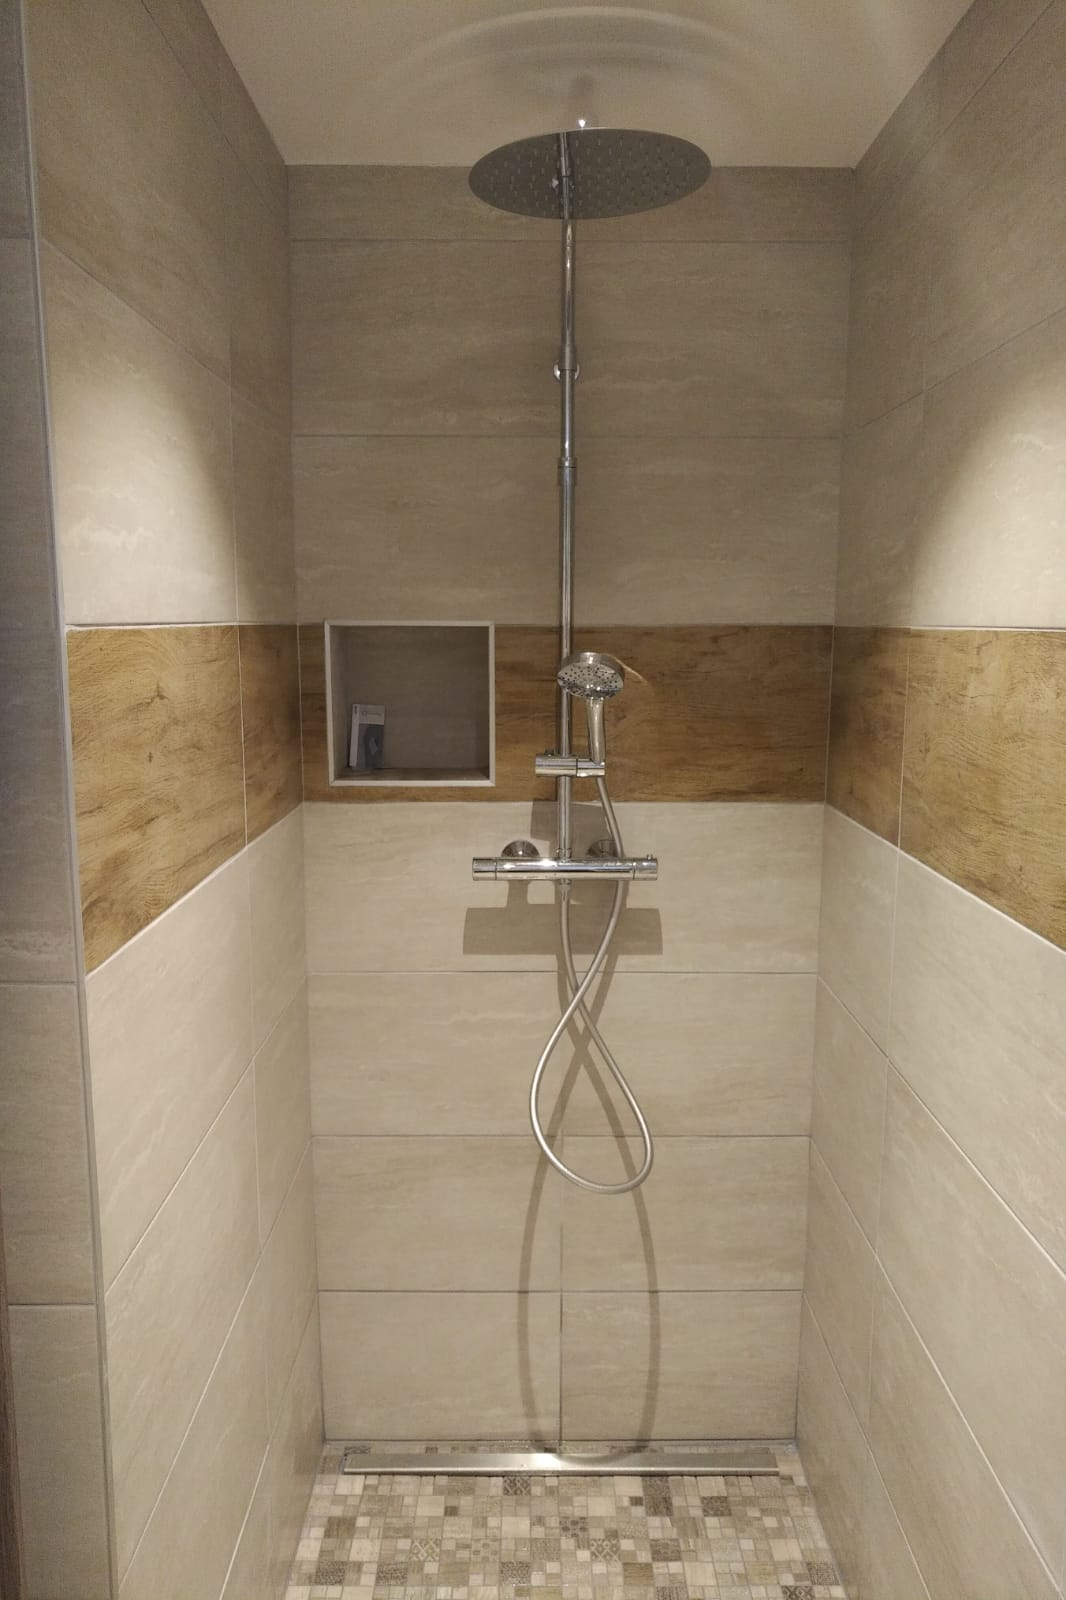 Installation D'Une Douche À L'Italienne Et D'Une Baignoire ... destiné Construire Une Douche À L Italienne